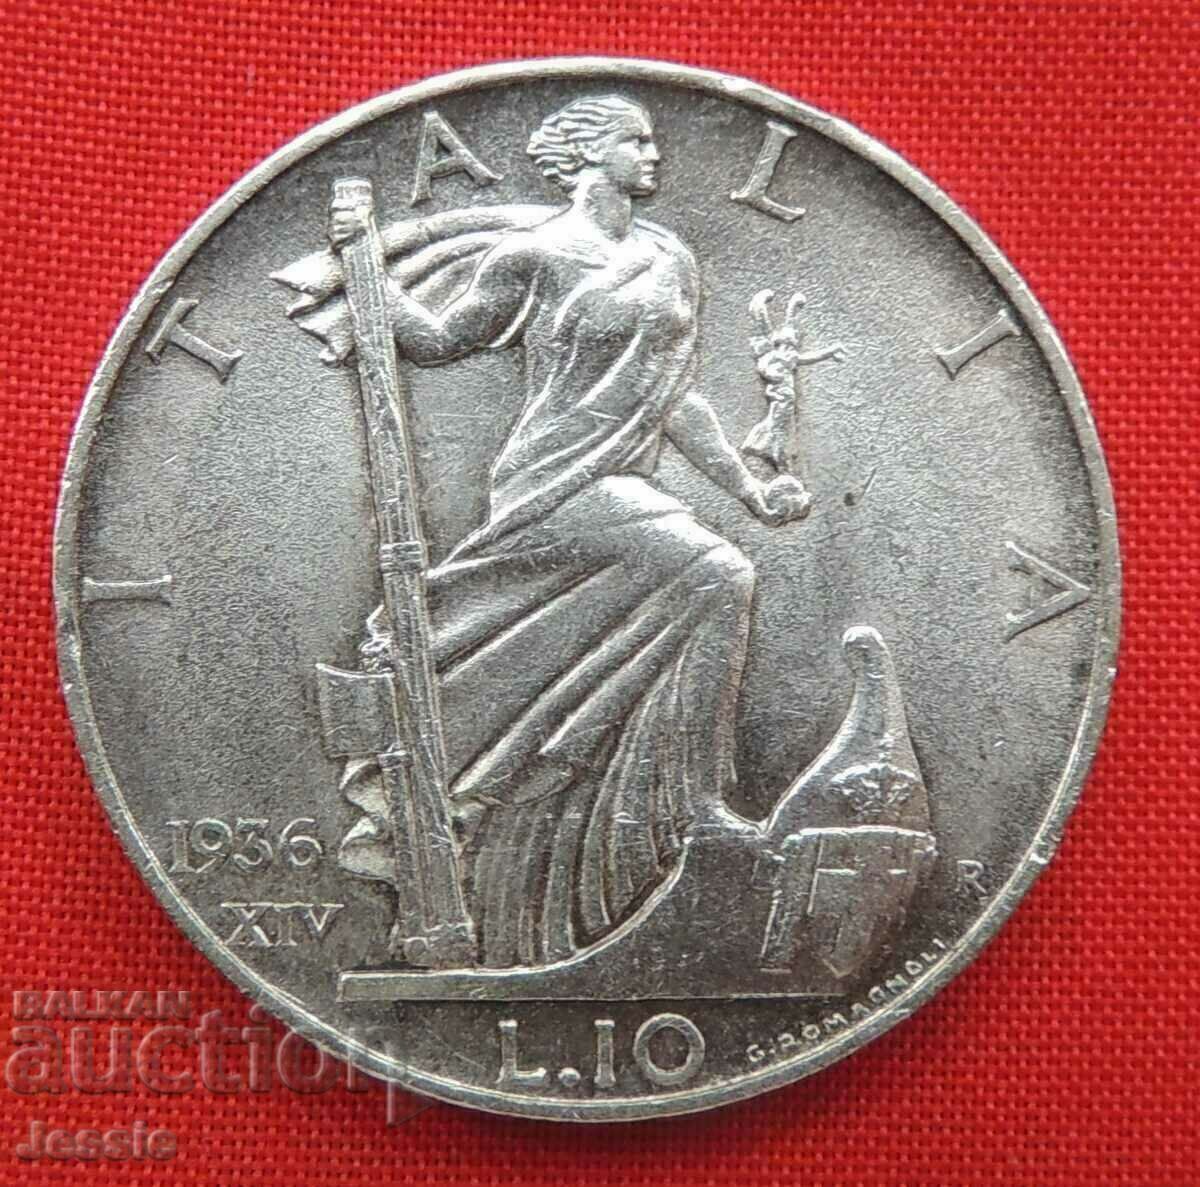 10 Lire 1936 Italy